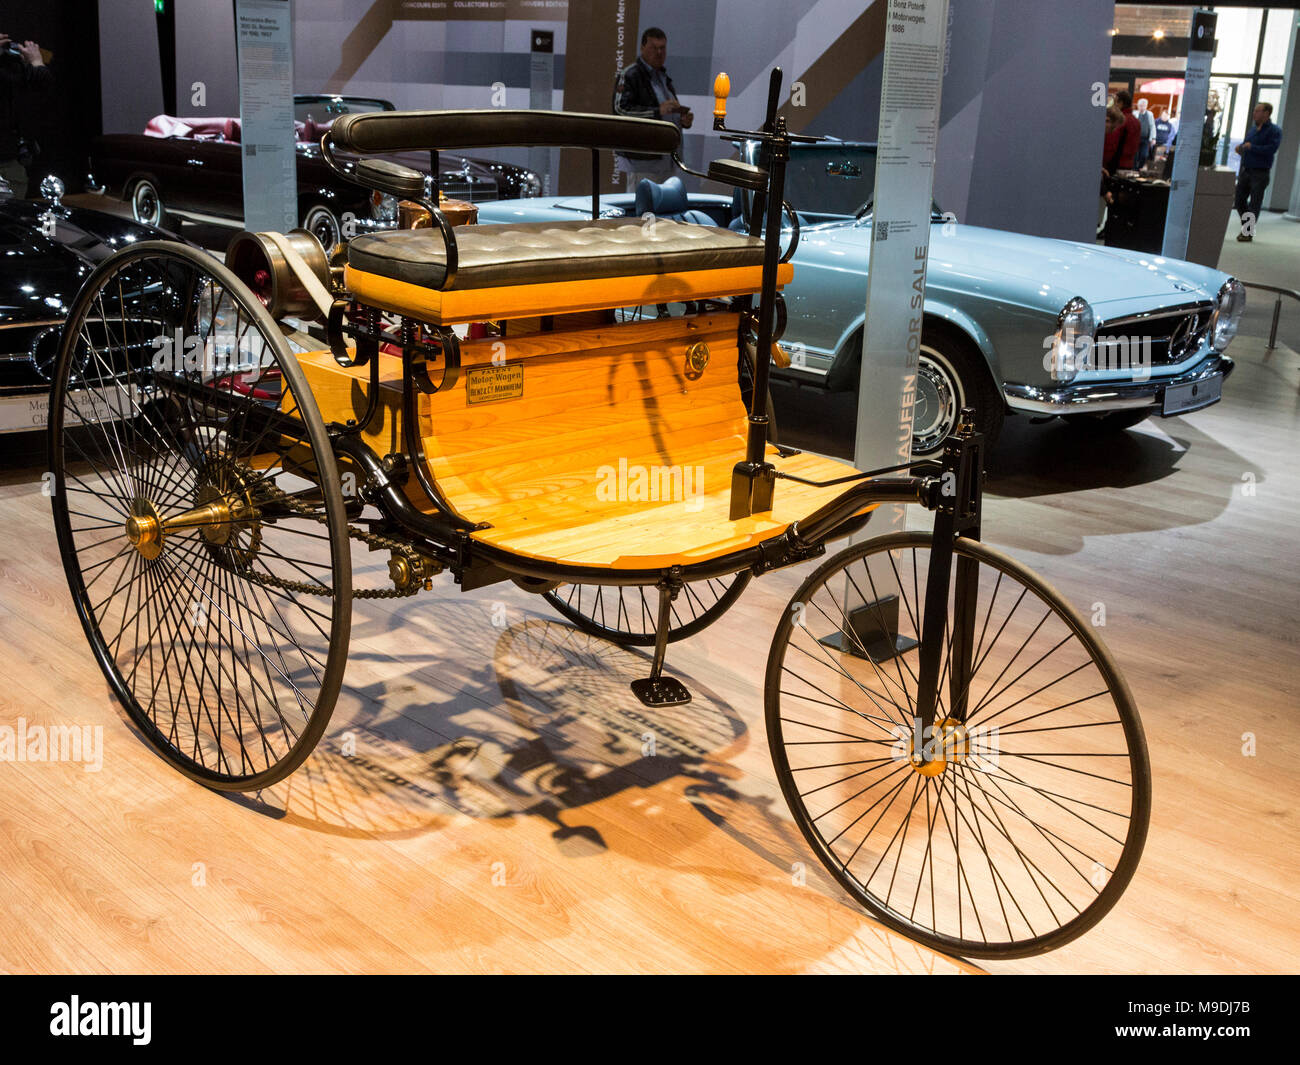 Benz Patent-Motorwagen, 1886. Techno-Classica Essen est le premier salon automobile de classic and vintage cars et automobiles de collection. En 2018, le salon a attiré plus de 185 000 visiteurs. Plus de 1 250 exposants de plus de 30 pays participent. Banque D'Images